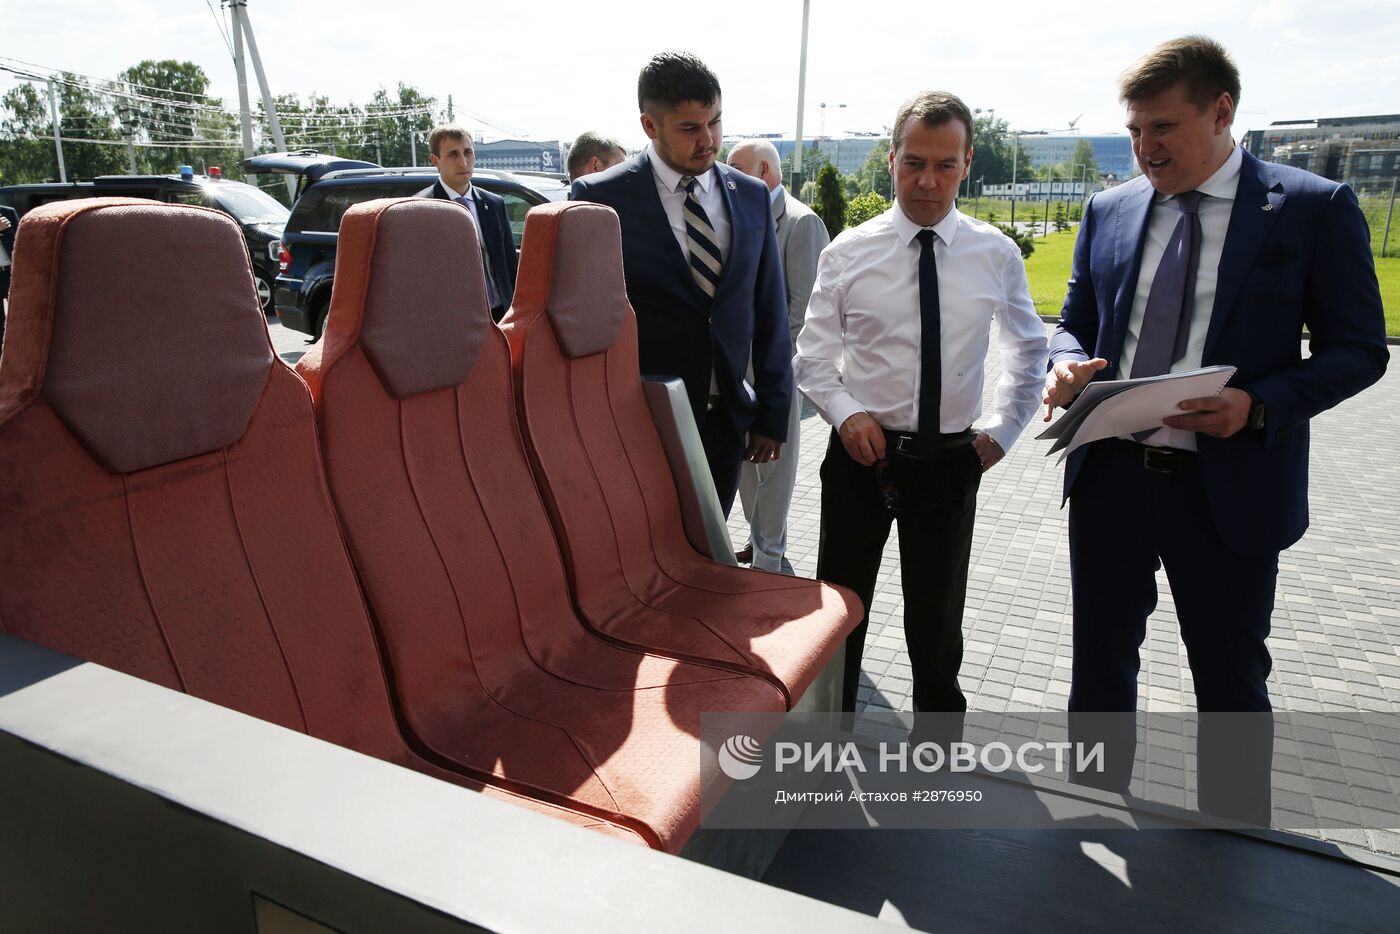 Премьер-министр РФ Д. Медведев провел заседание попечительского совета Фонда "Сколково"